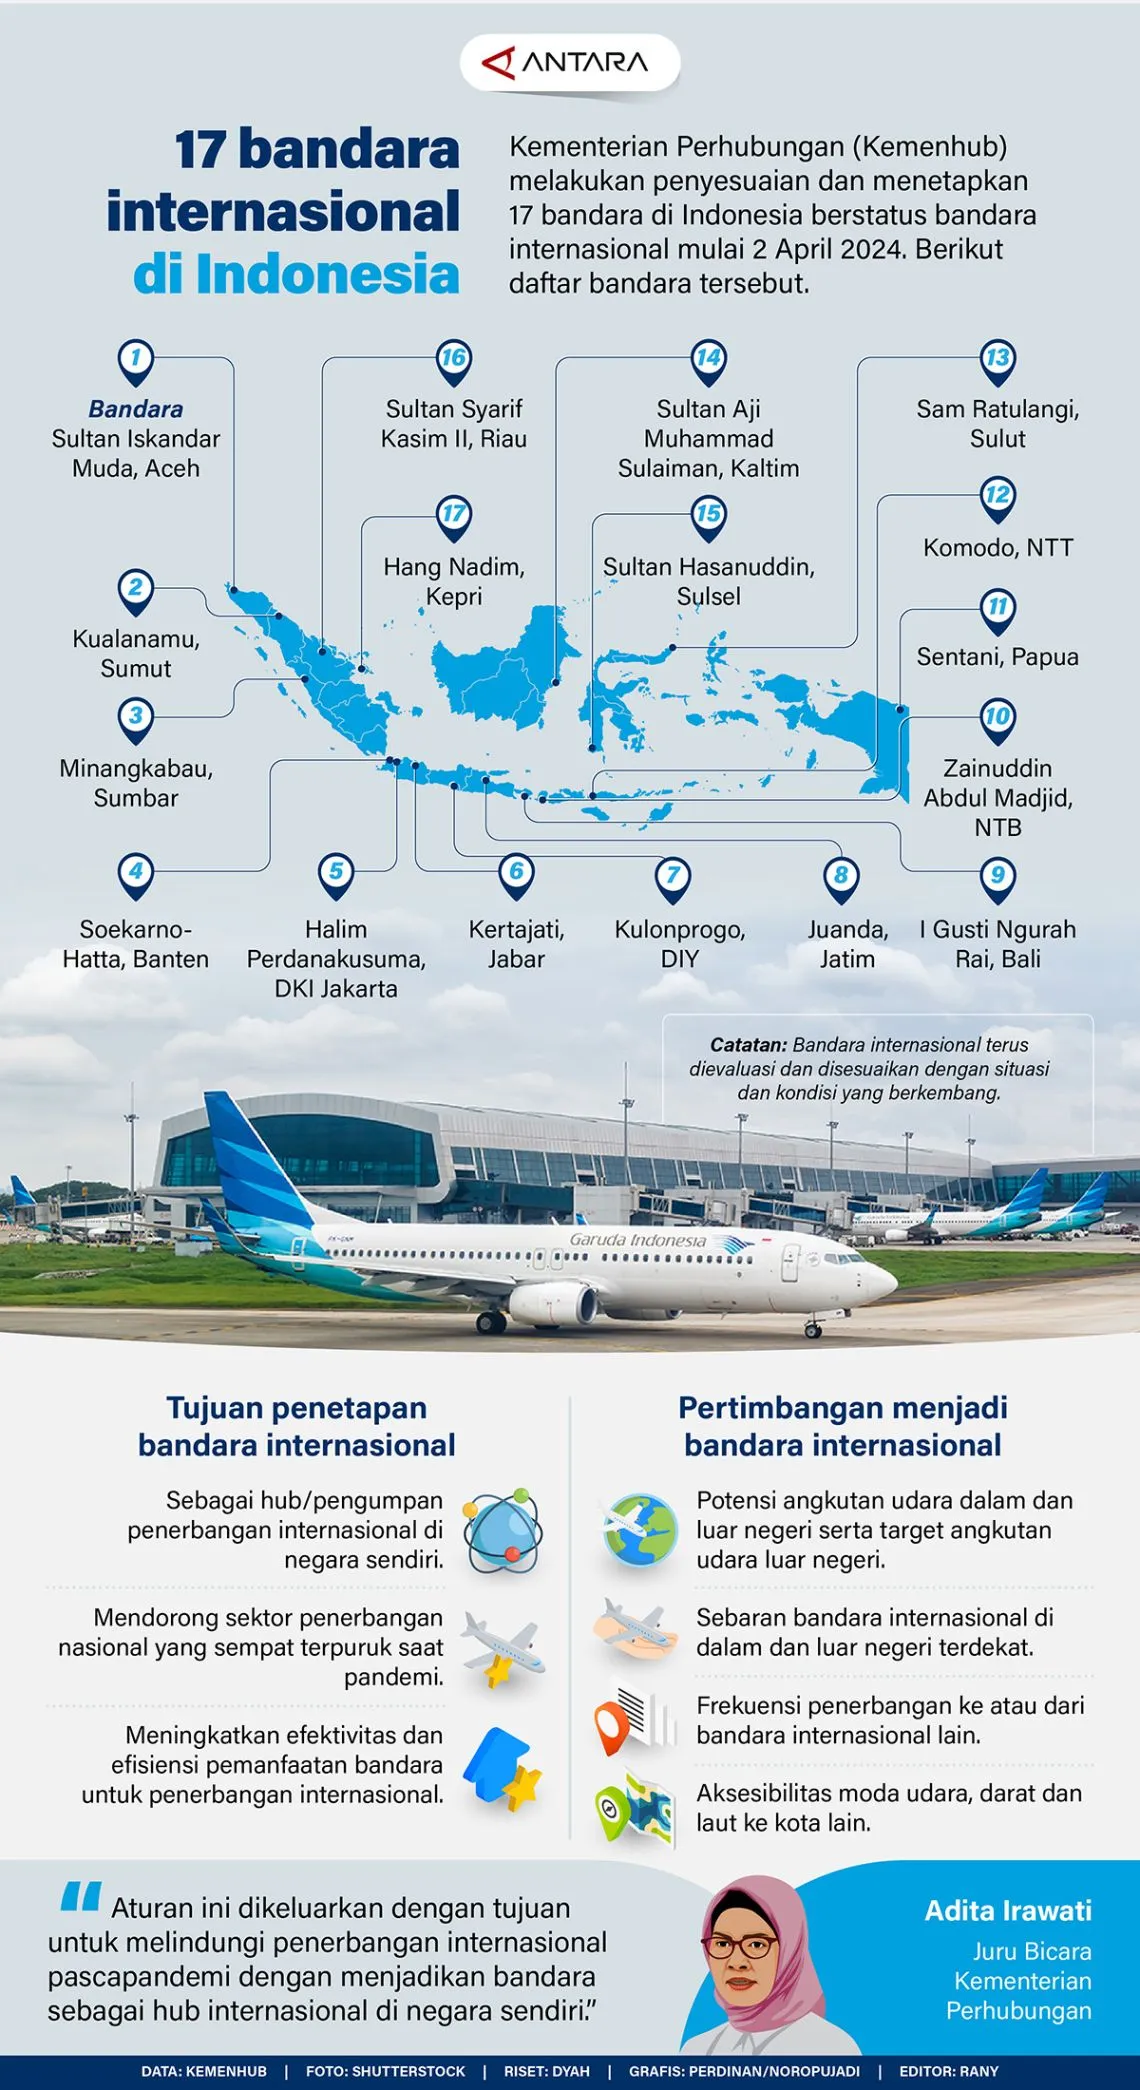 #17 bandara internasional di Indonesia